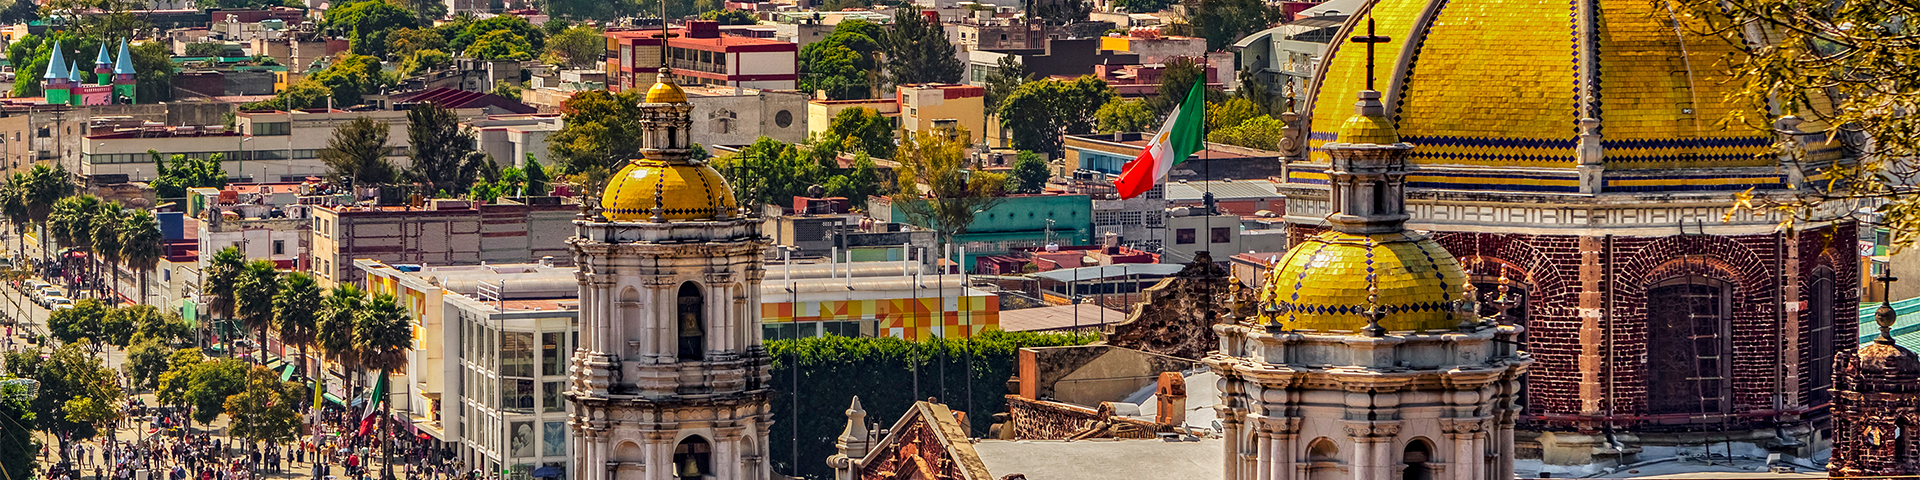 Mexique - Mexico - banner